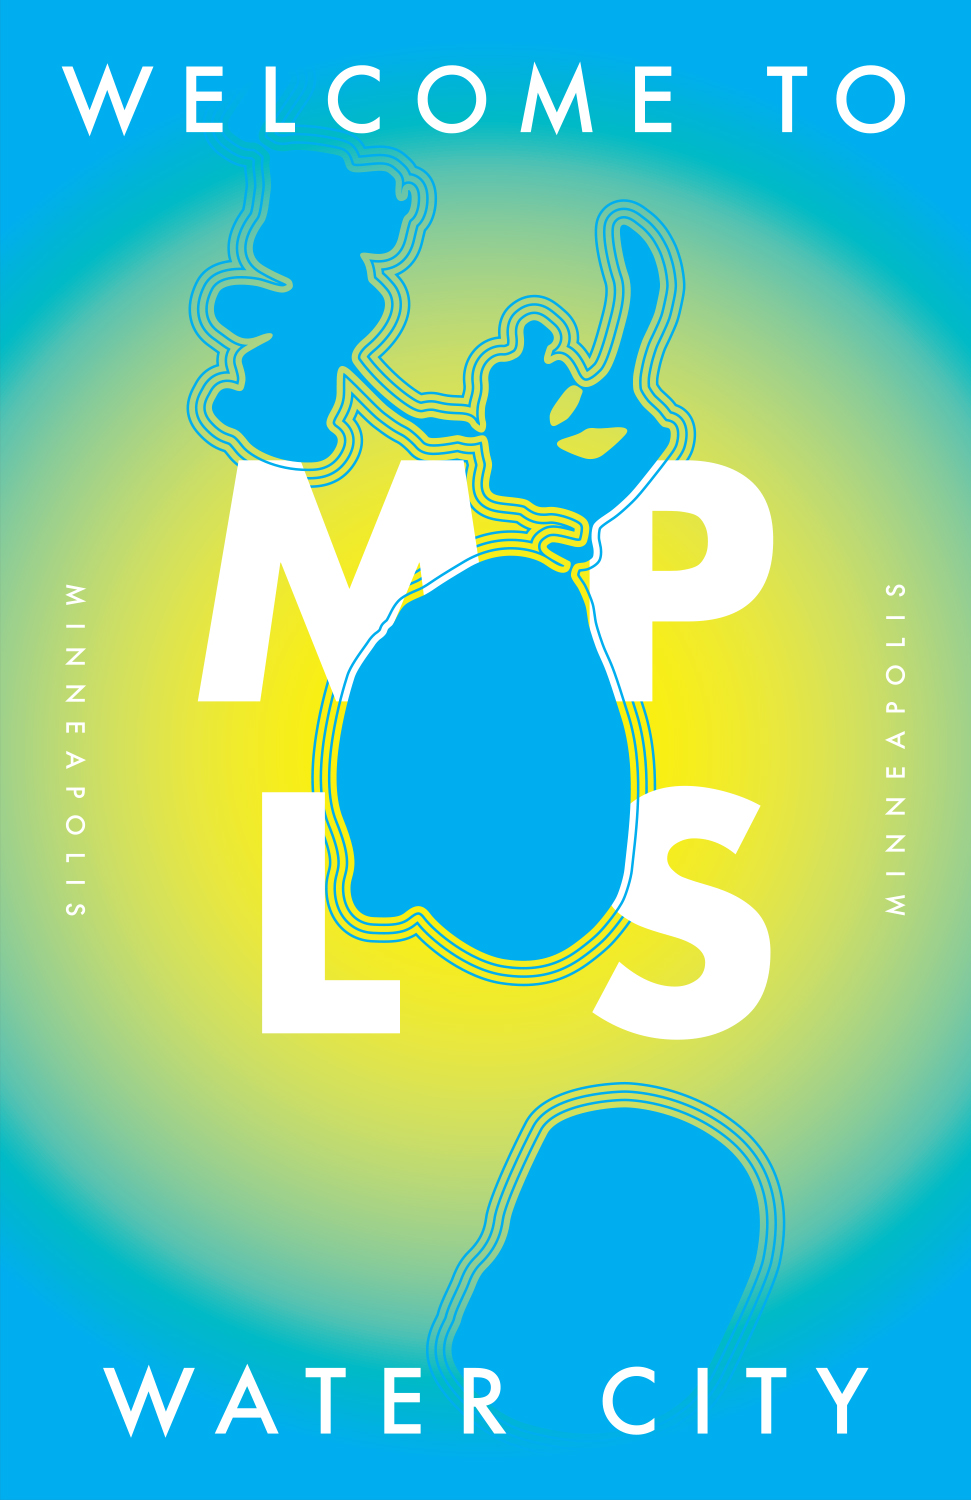 Minneapolis Travel Poster (2013)